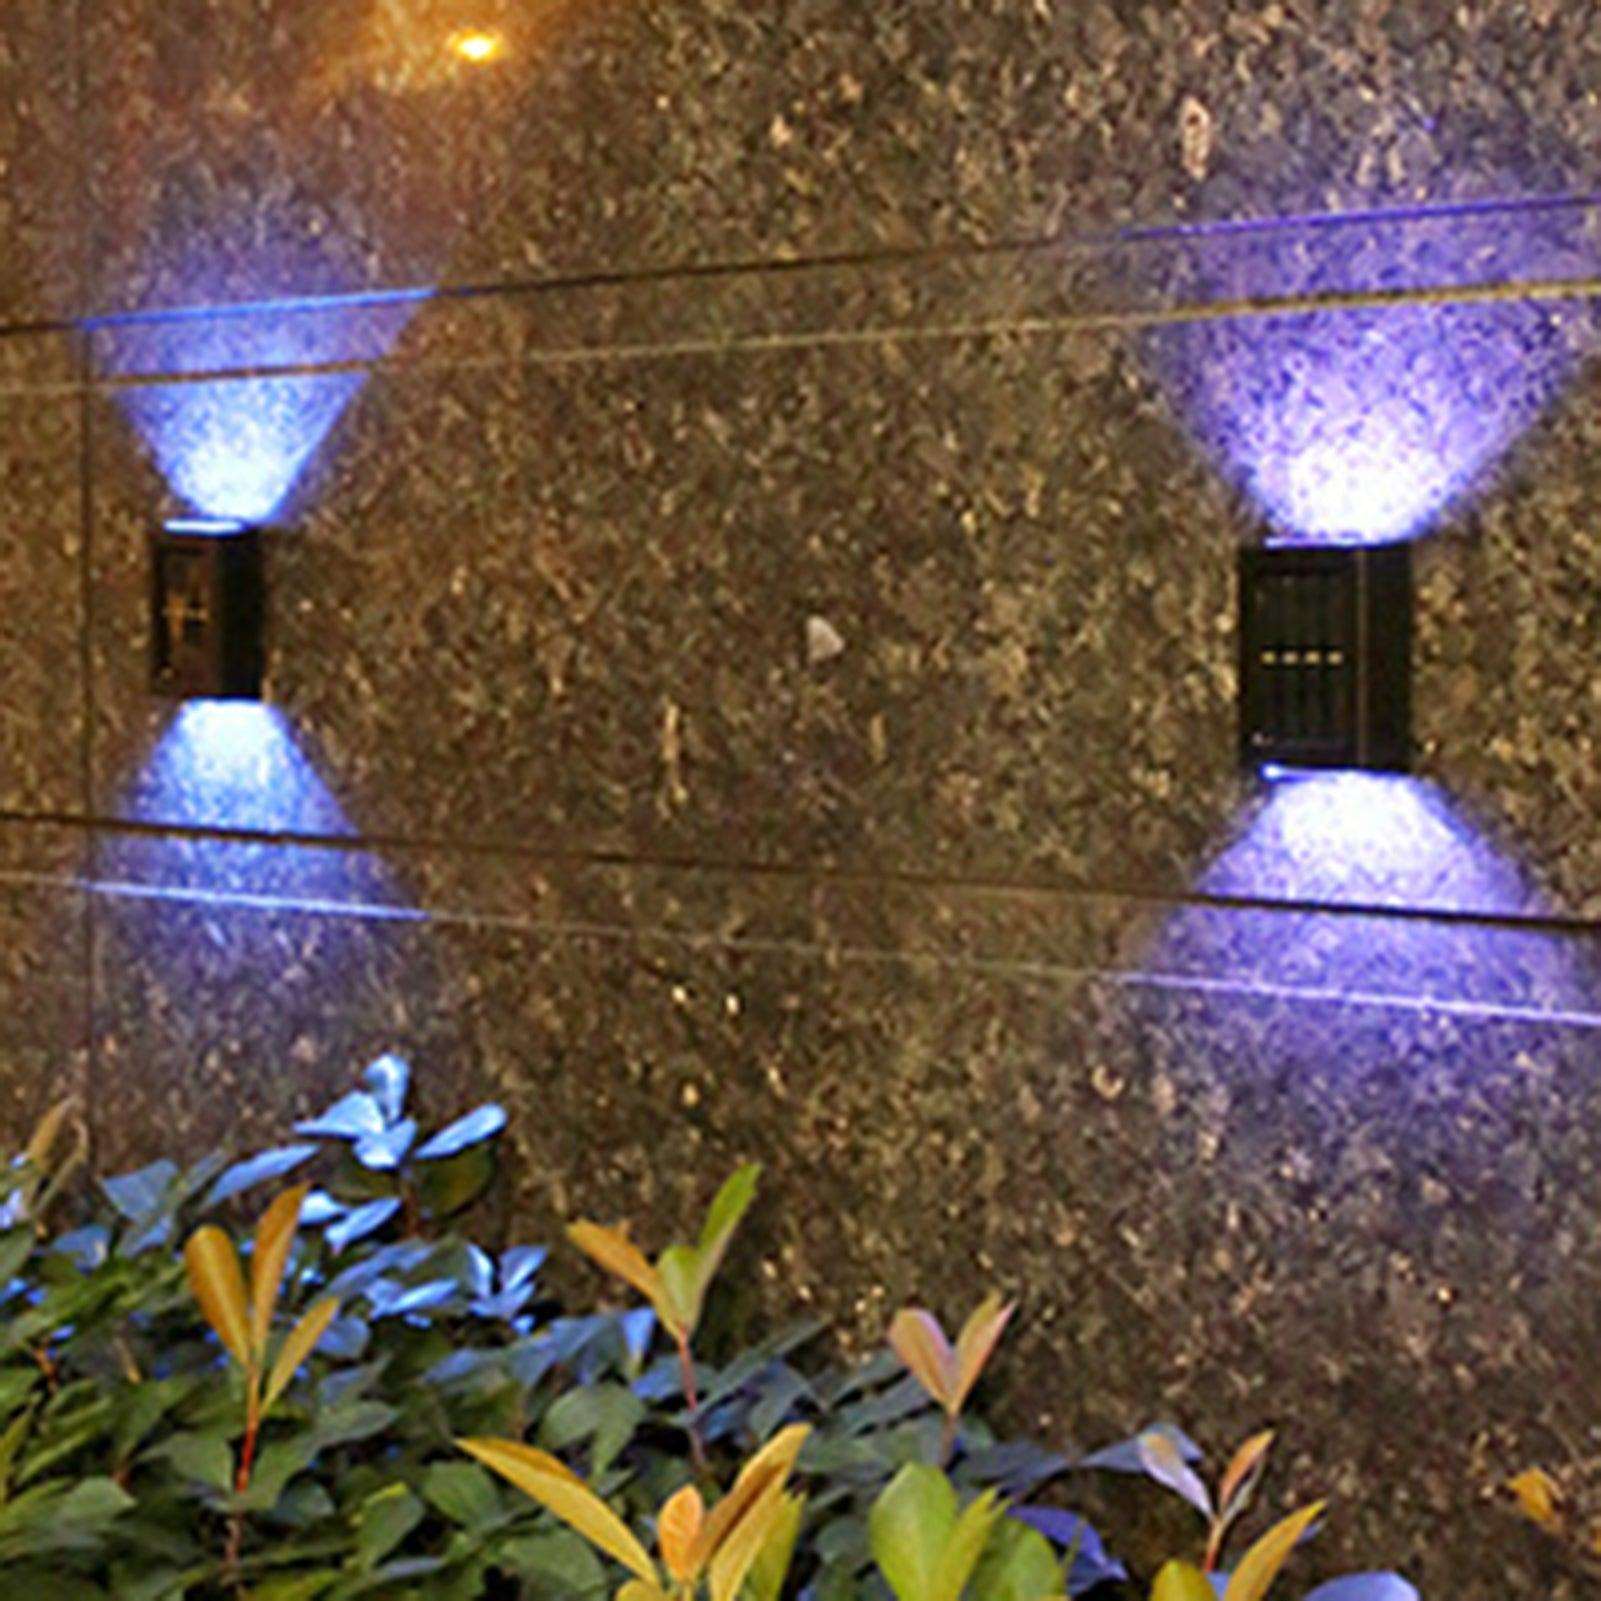 Solarna LED zidna dekorativna svjetiljka - EuroShop